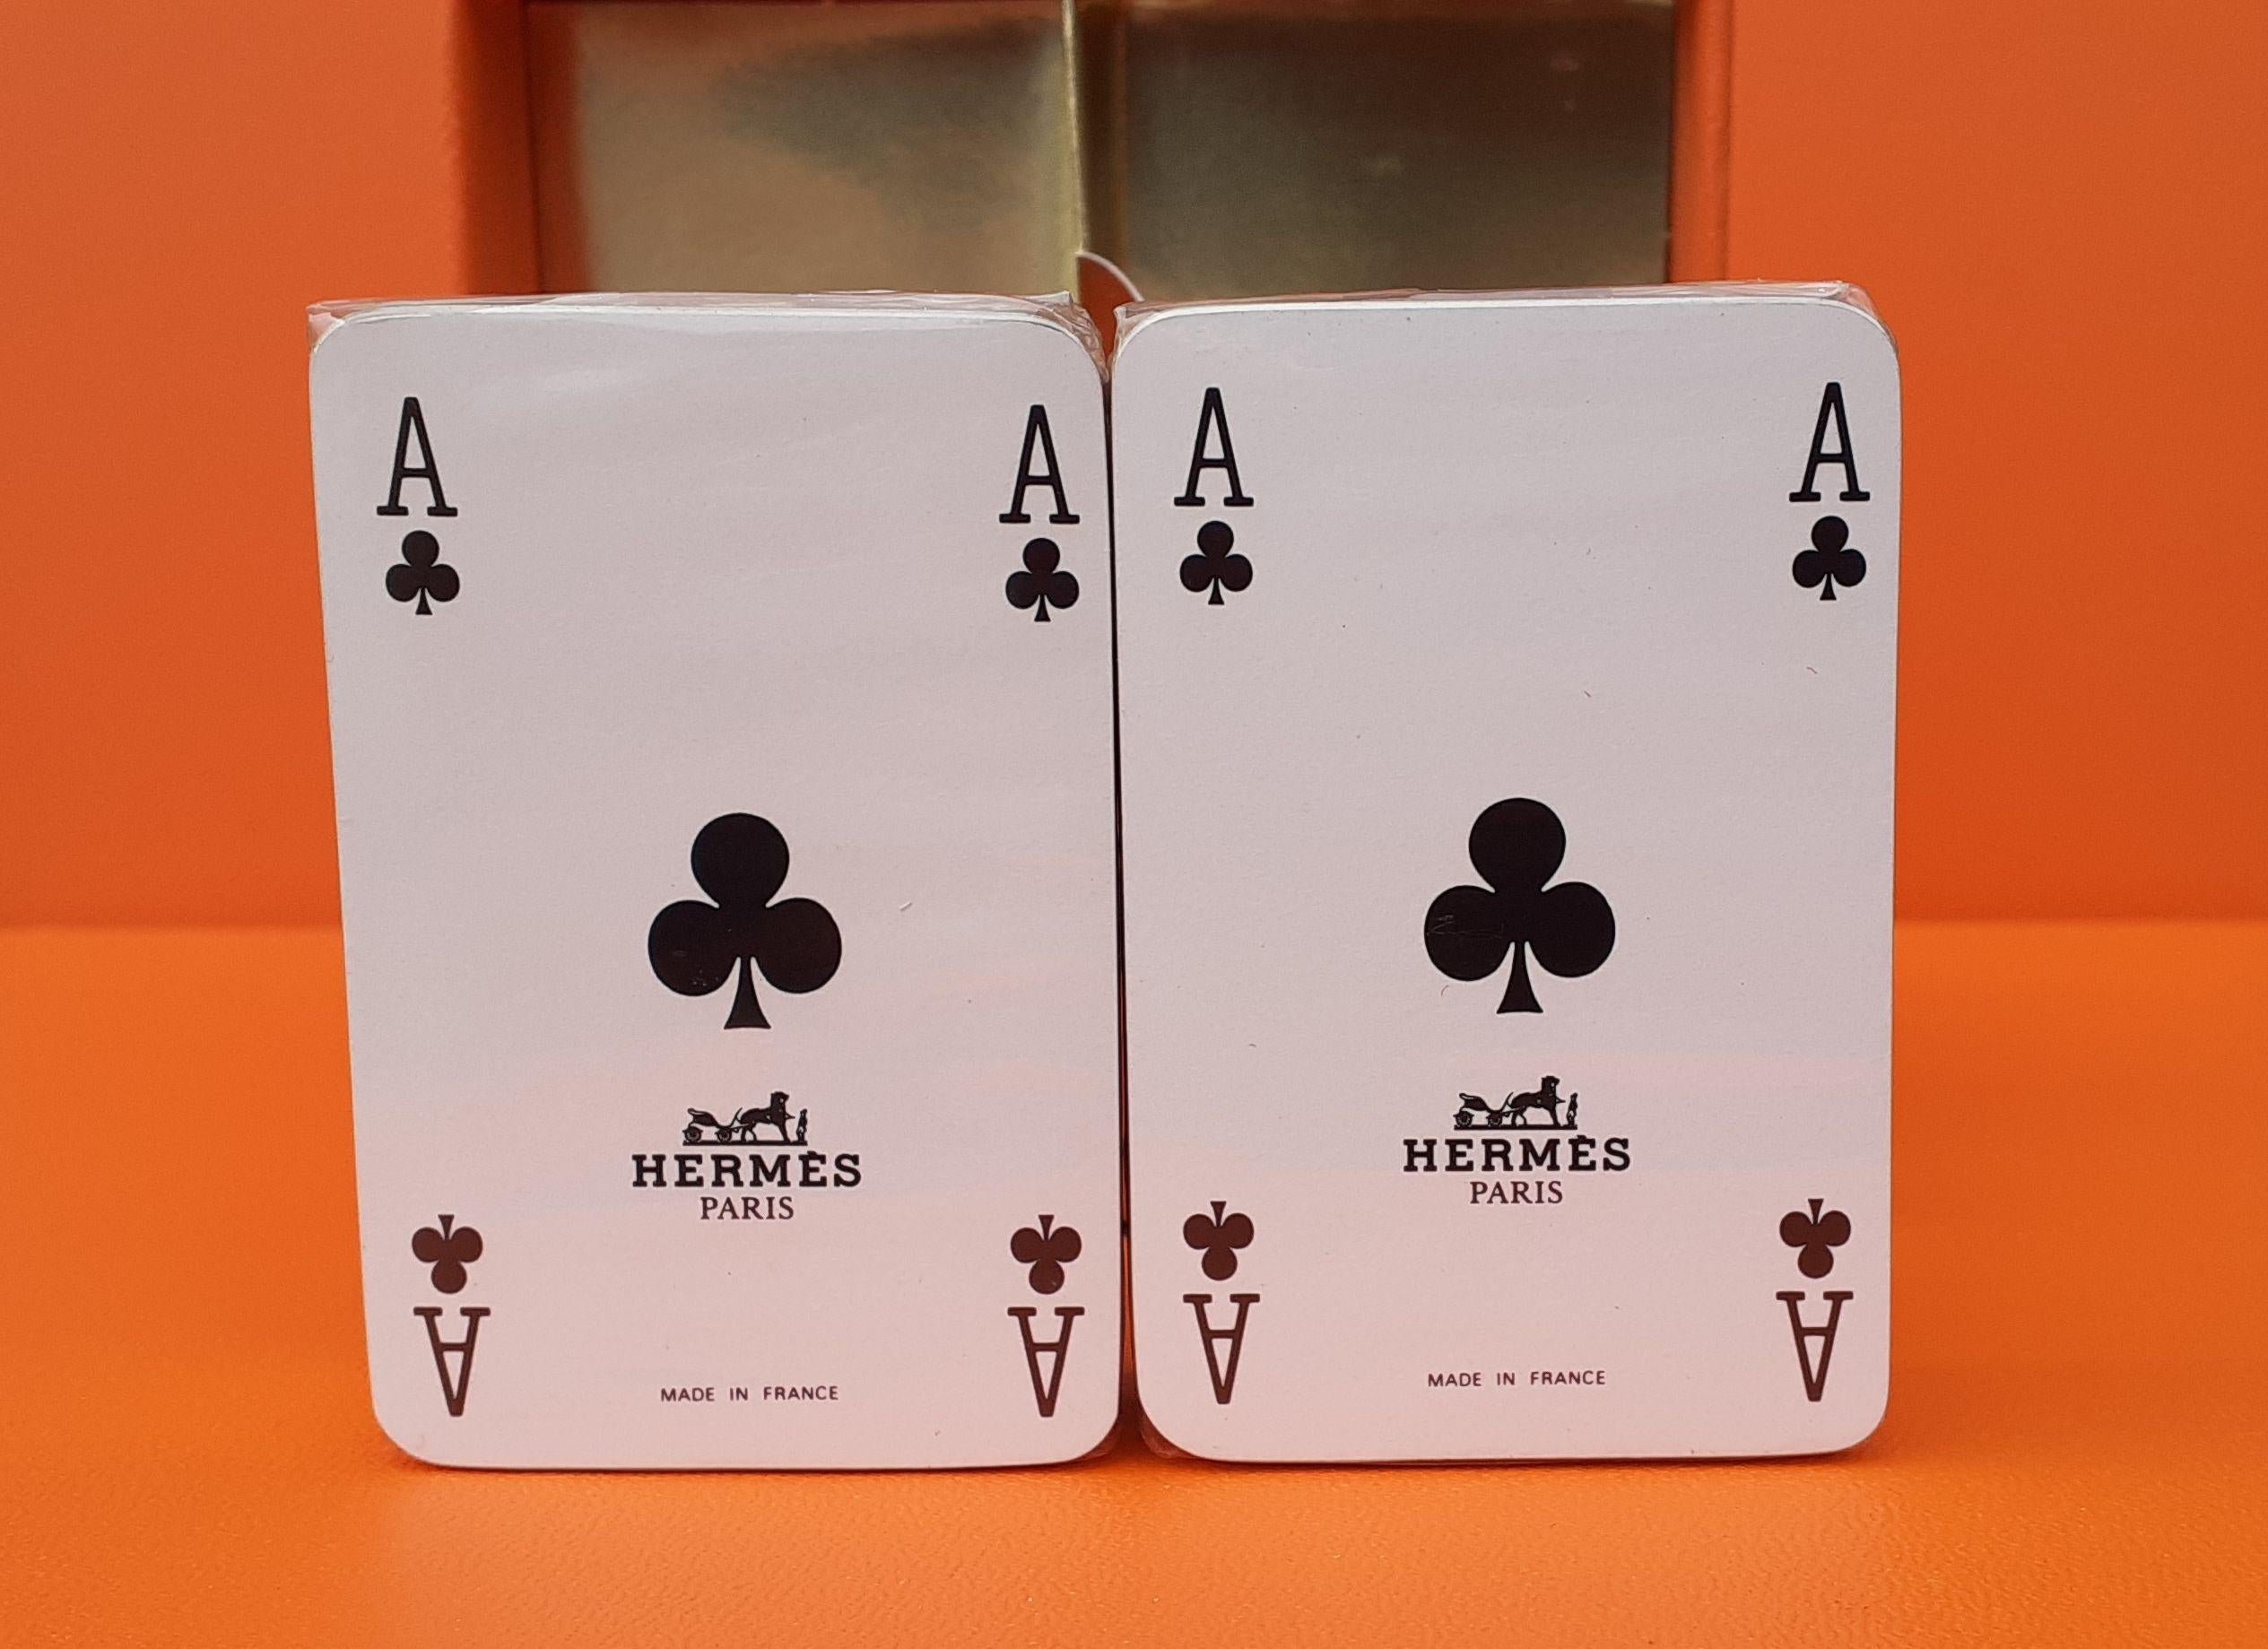 Jeux de cartes miniatures Hermès super mignons

Ensemble de 2 pièces

Motif du dos : 